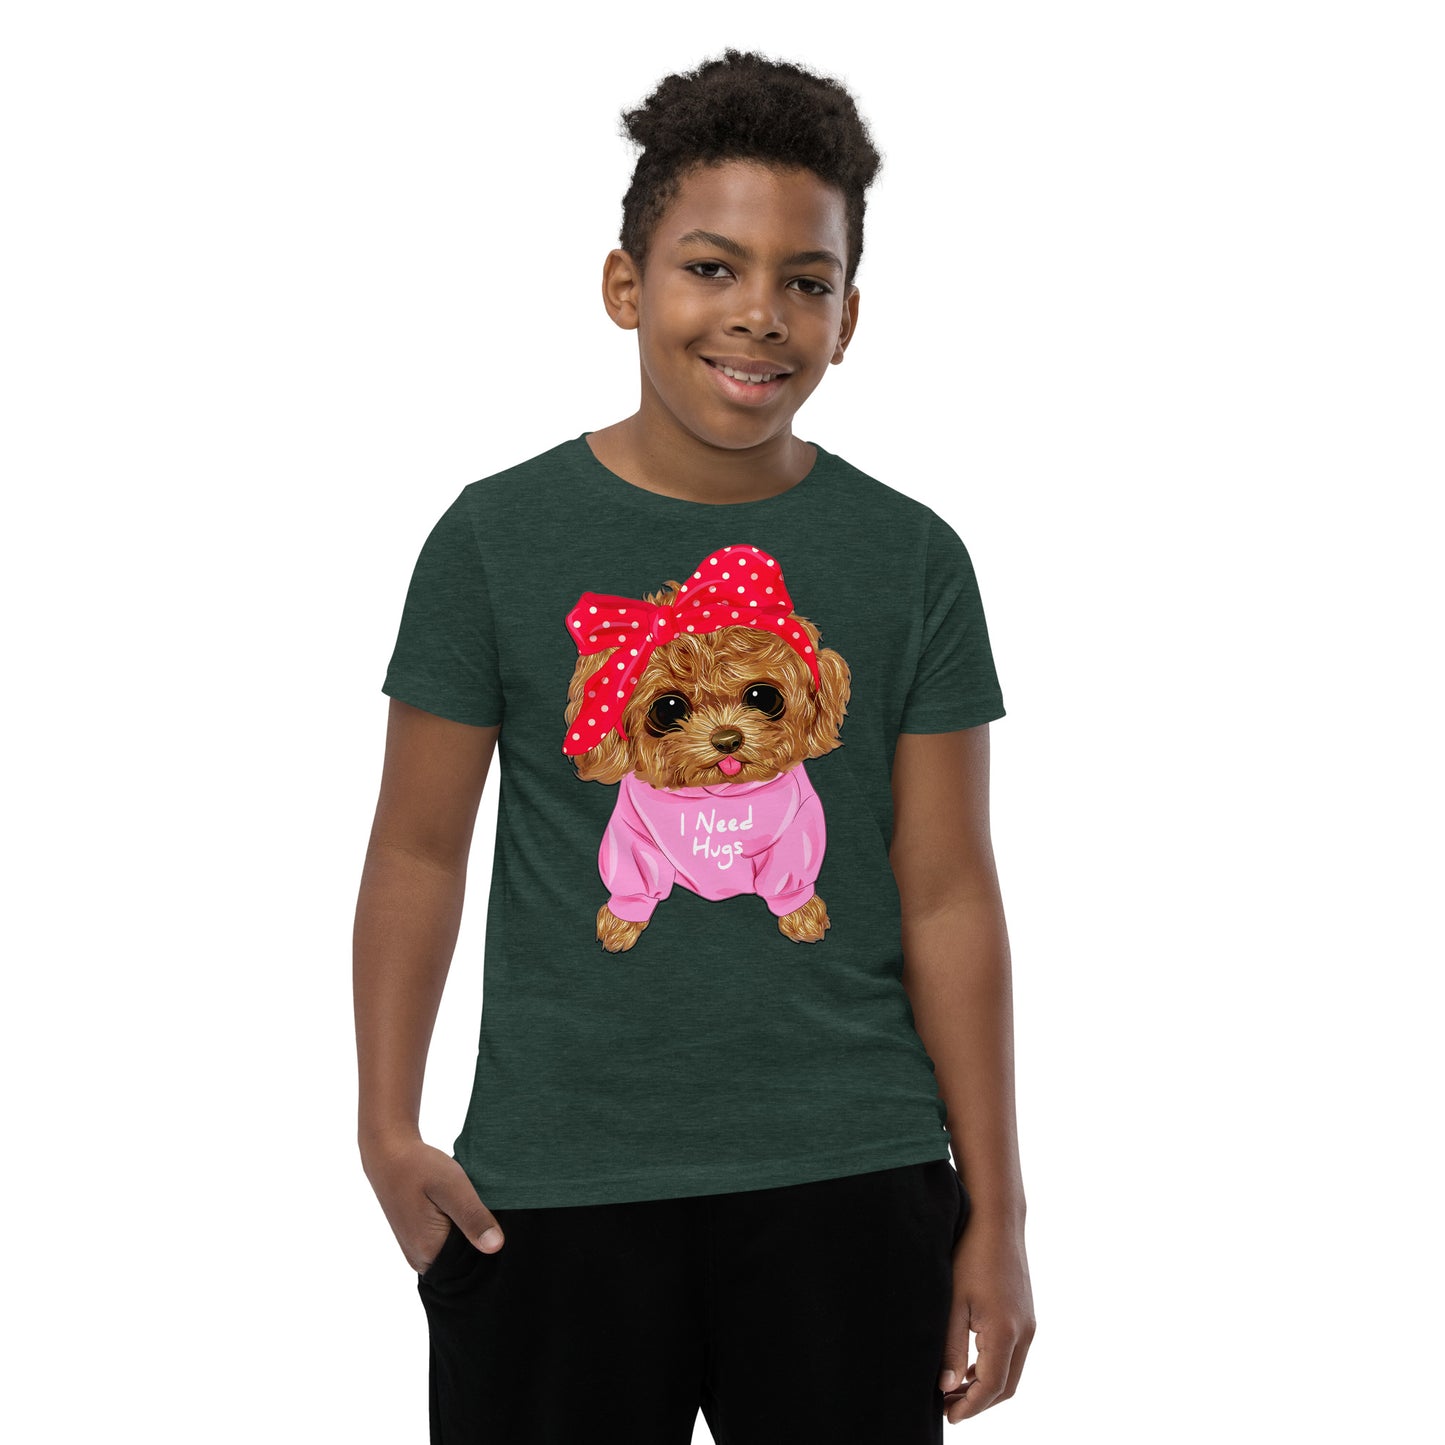 Cute Dog Puppy Needs a Hug T-shirt, No. 0296